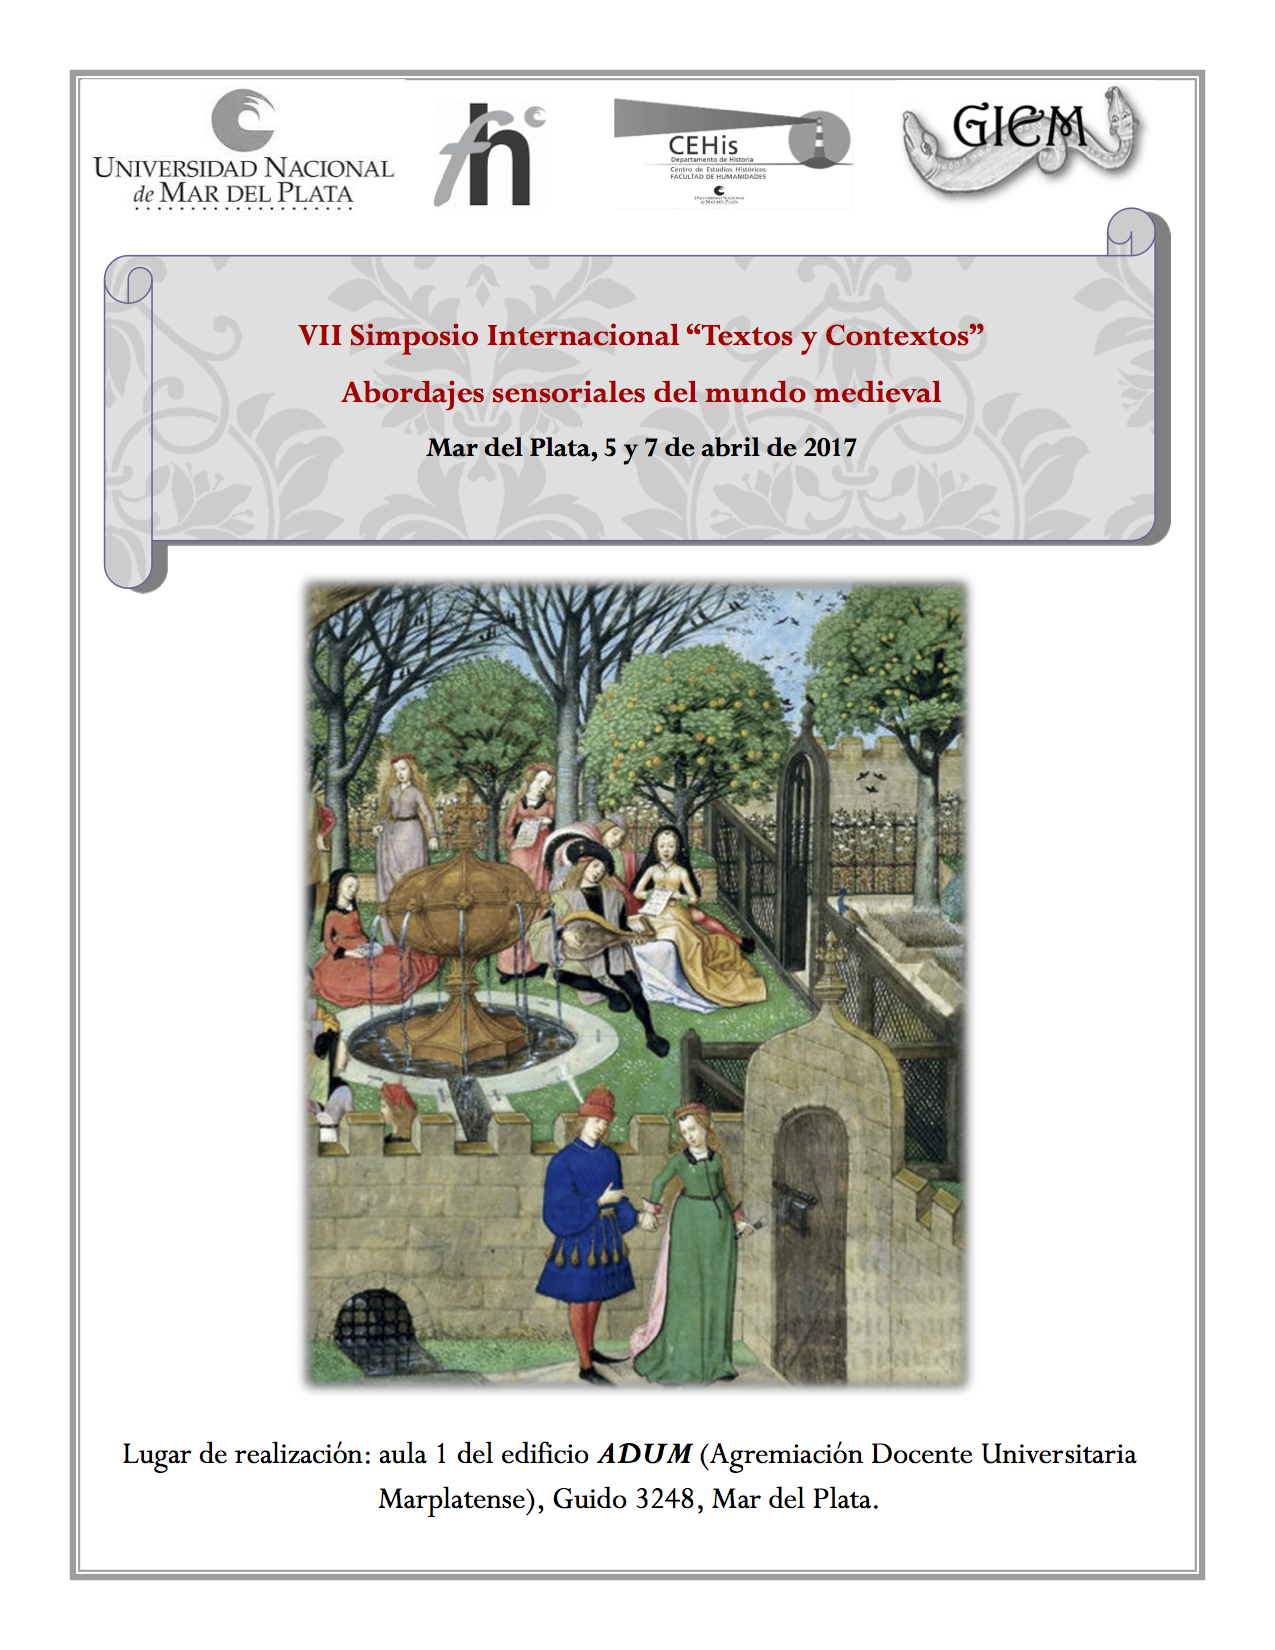 Afiche_VII-Simposio-Internacional-Textos-y-Contextos_abordajes-sensoriales-del-mundo-medieval copia